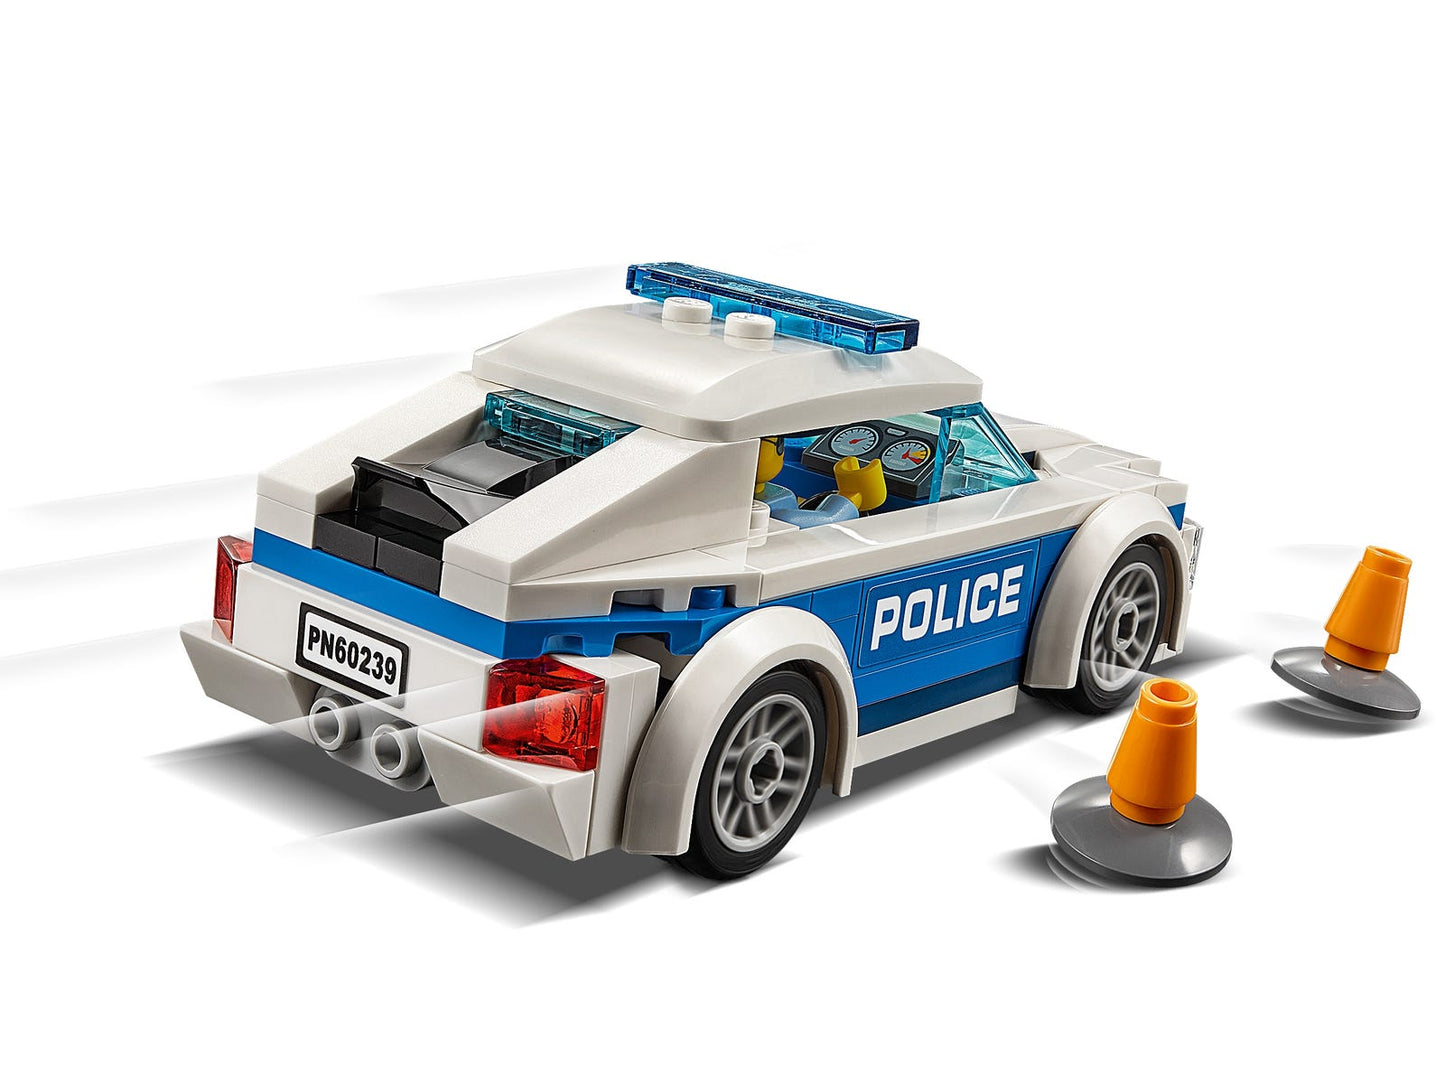 Lego City Police Patrol Car 60239